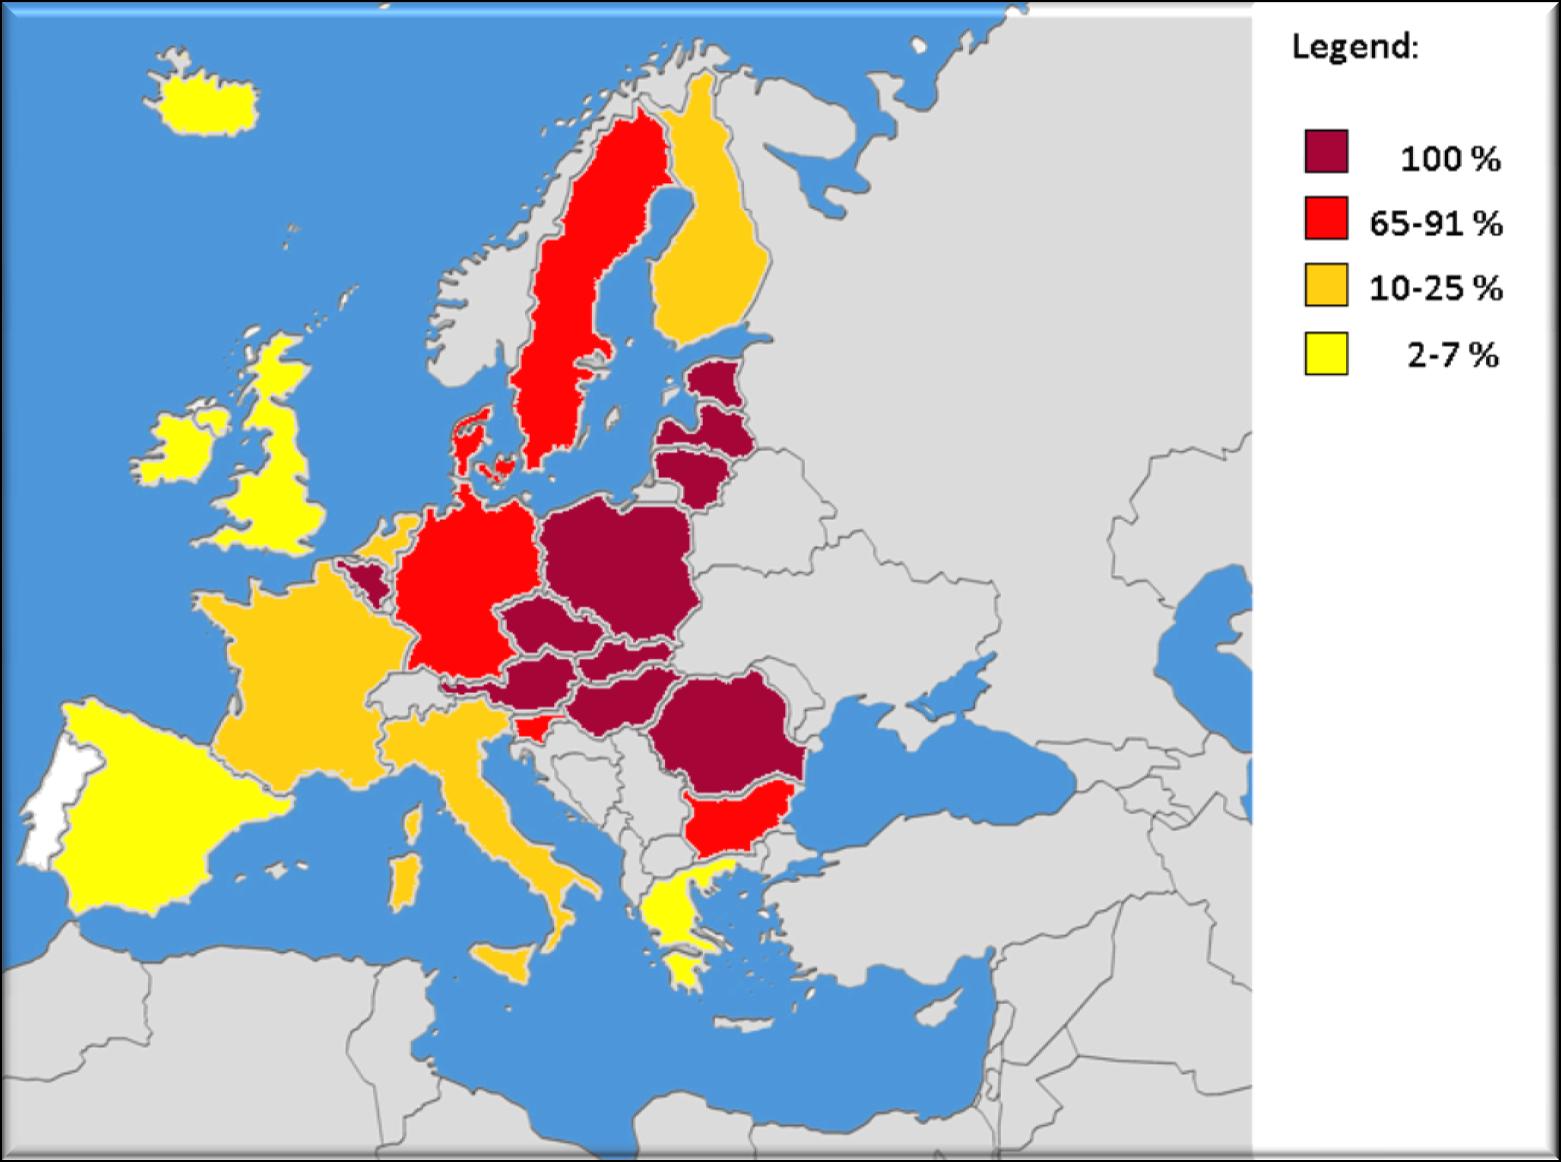 Az édesvízi akvakultúra aránya az akvakultúrában az EU országokban, 2010 -